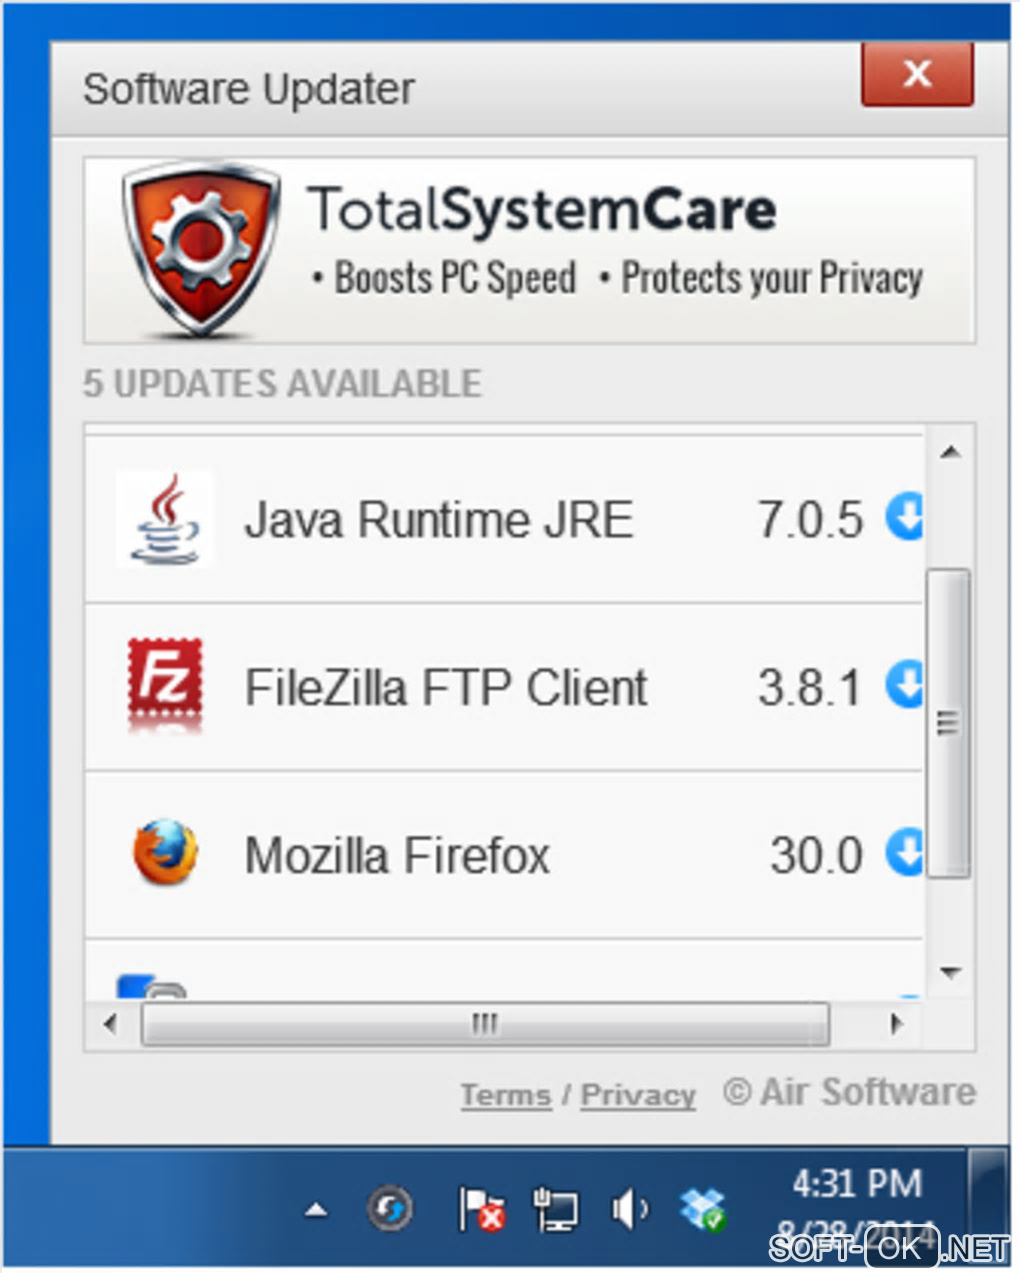 Screenshot №1 "Software Updater"